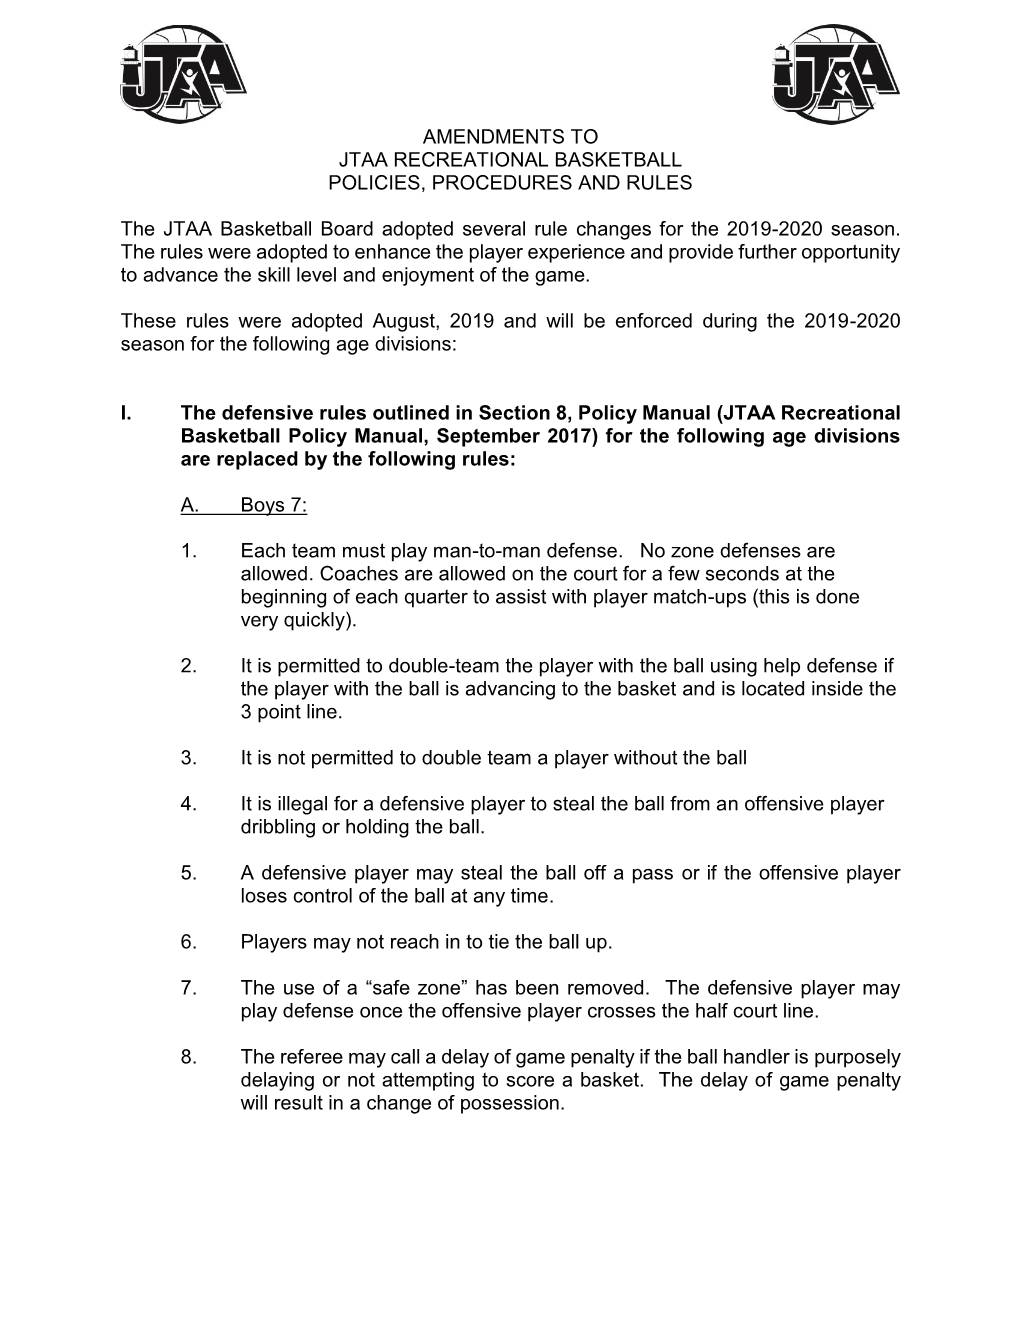 2019 2020 Amendments to JTAA Basketball Policy Manual